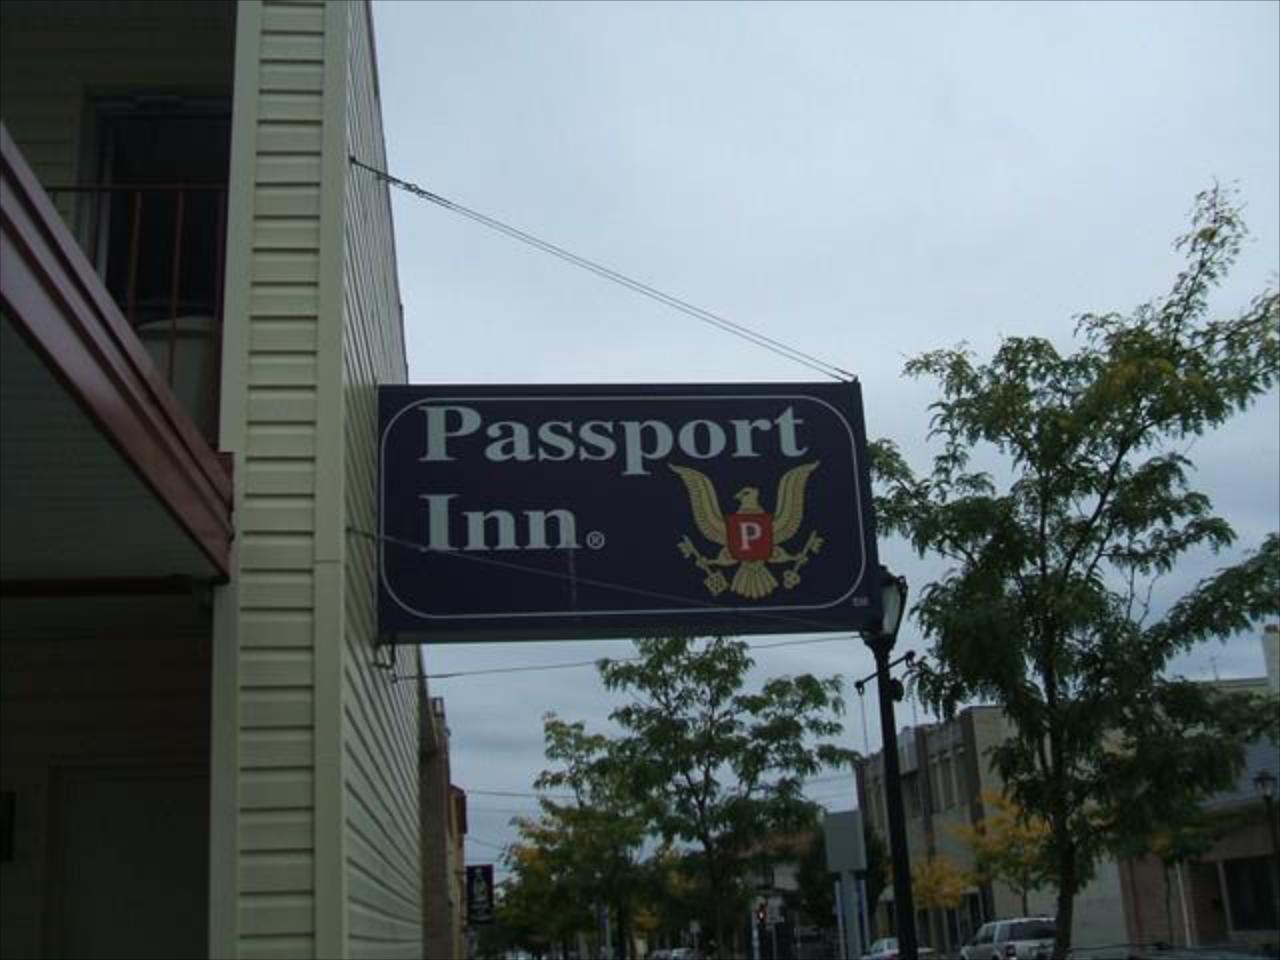 Passport Inn 3rd Street